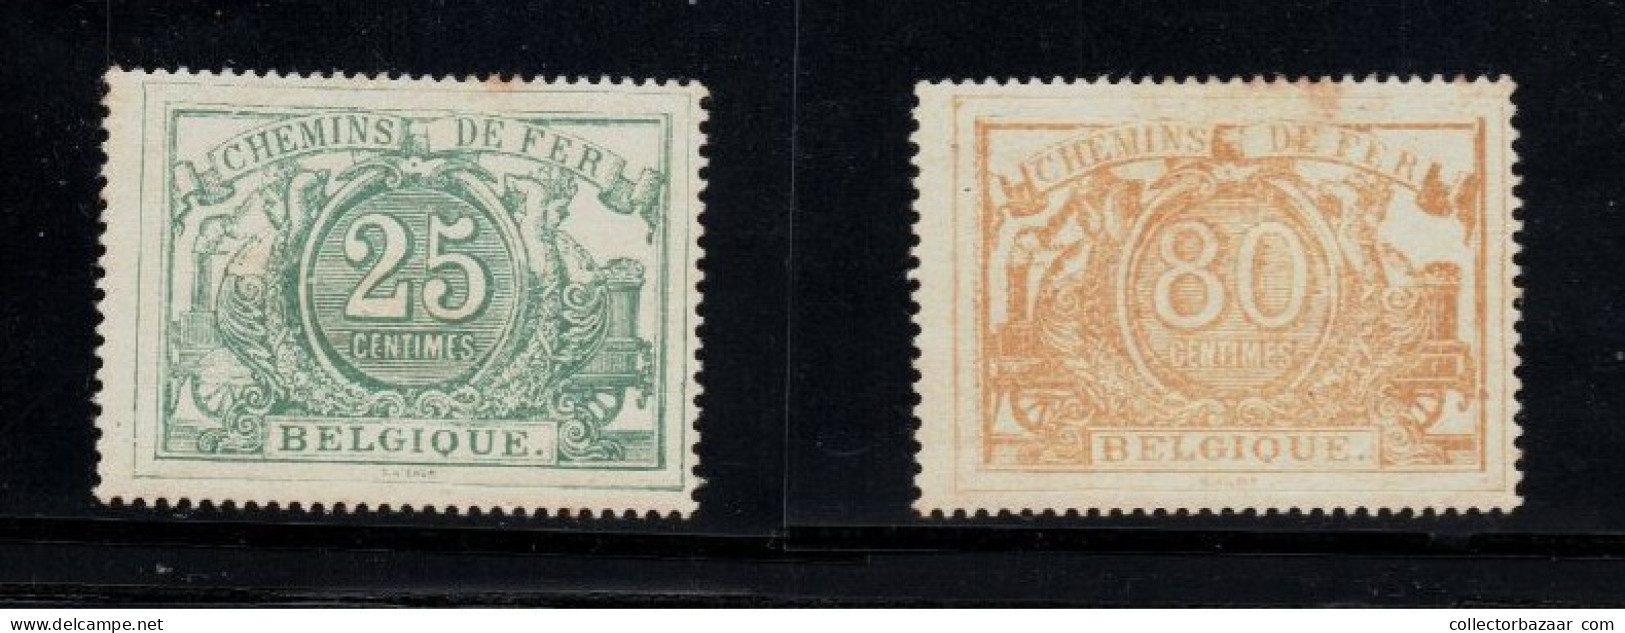 Belgium Belgique Mint Reprints Or Fakes ? Please Decide You Railway Railroad Stamps Chemins De Fer - Nuovi